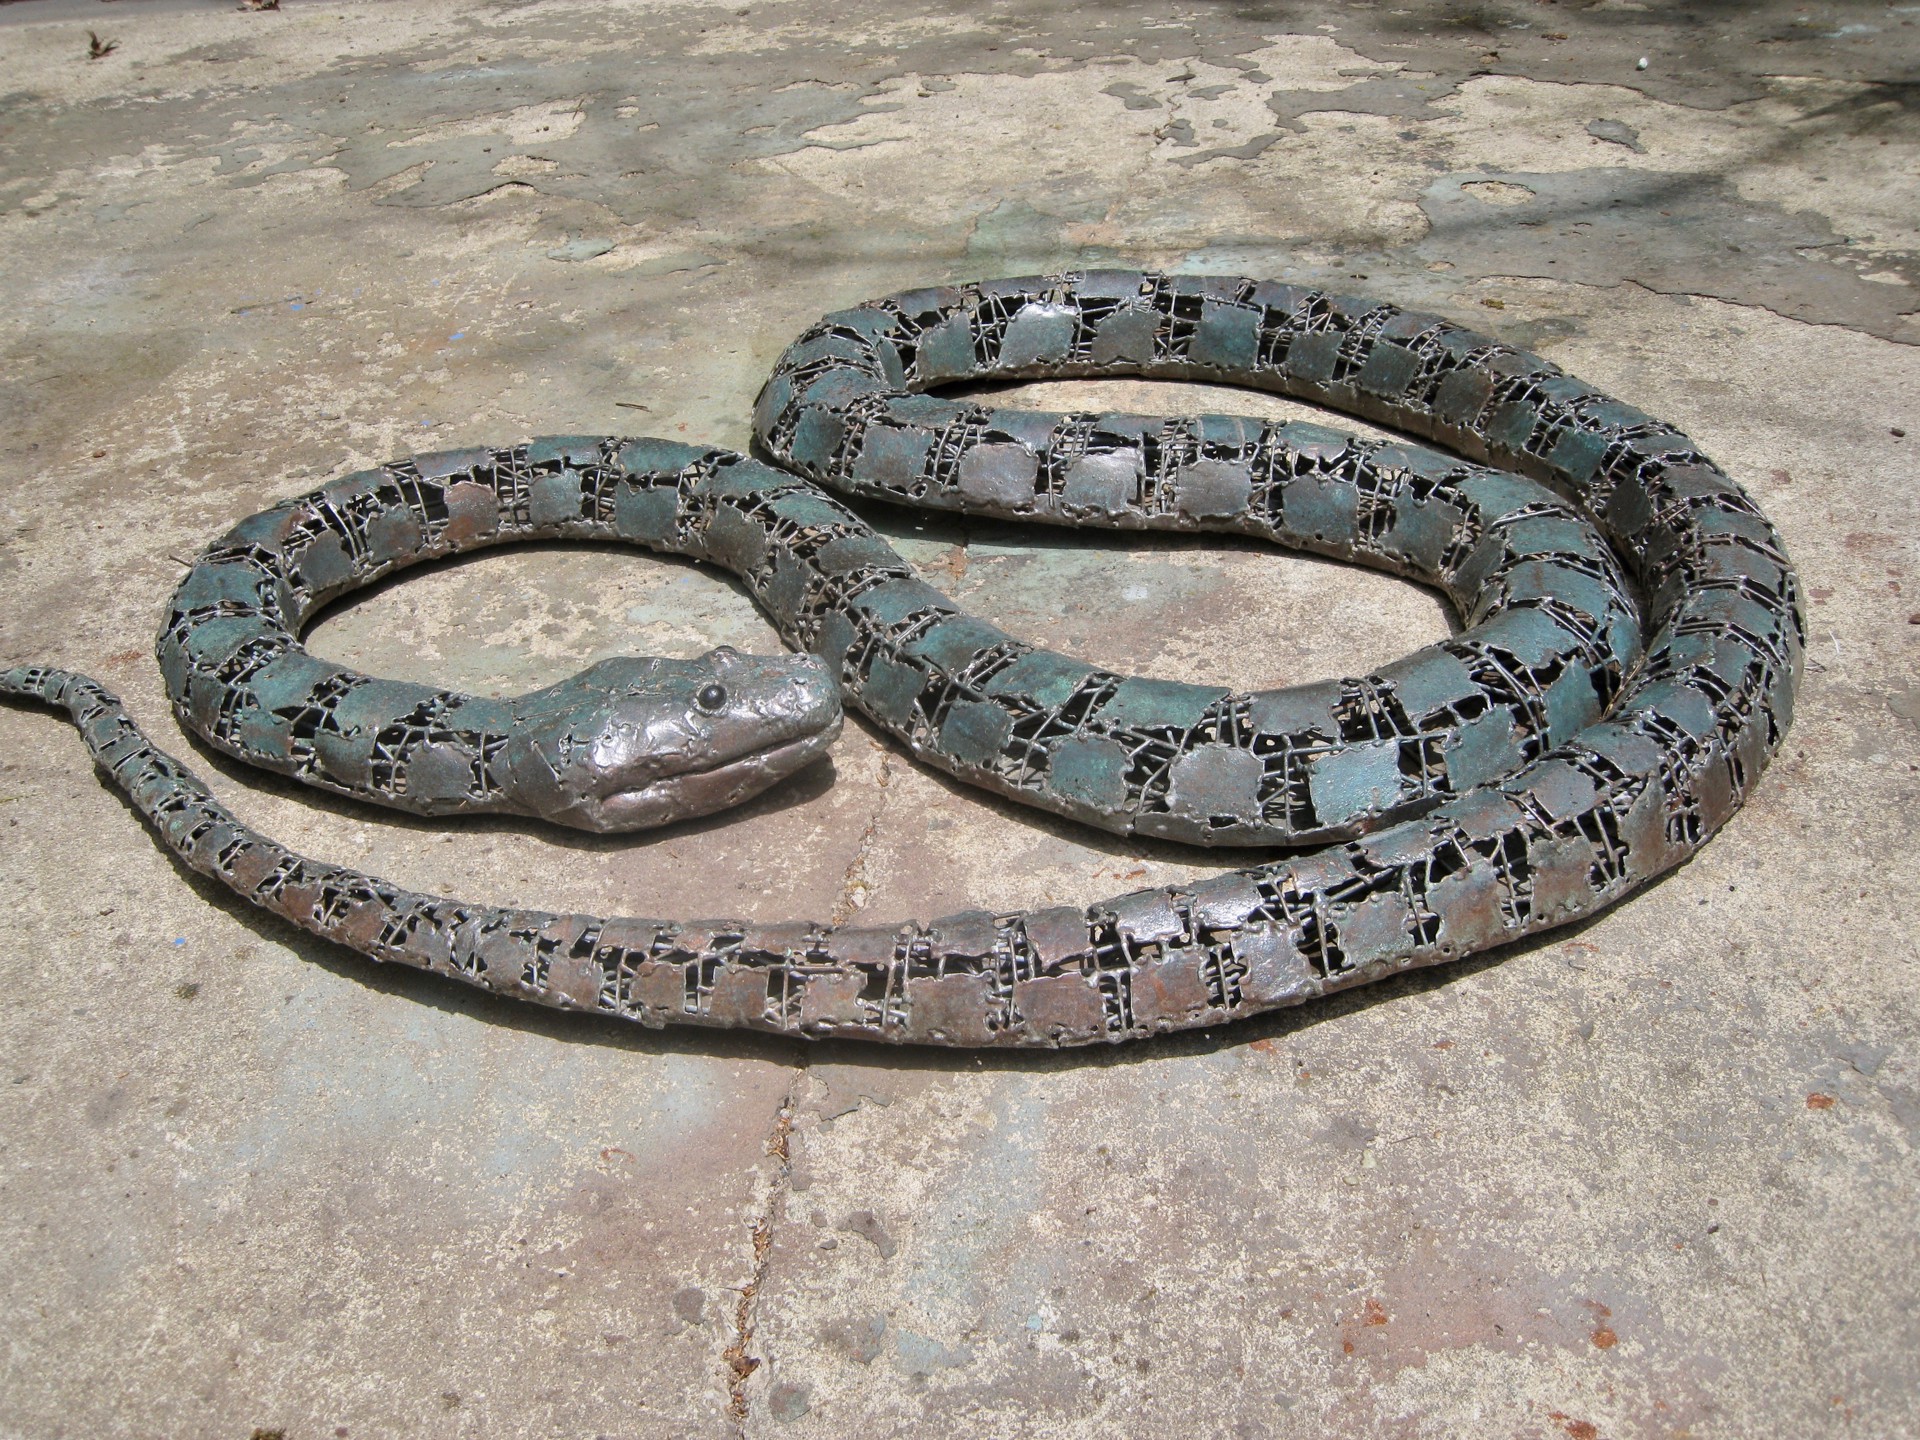 Constrictor Snake by William Allen